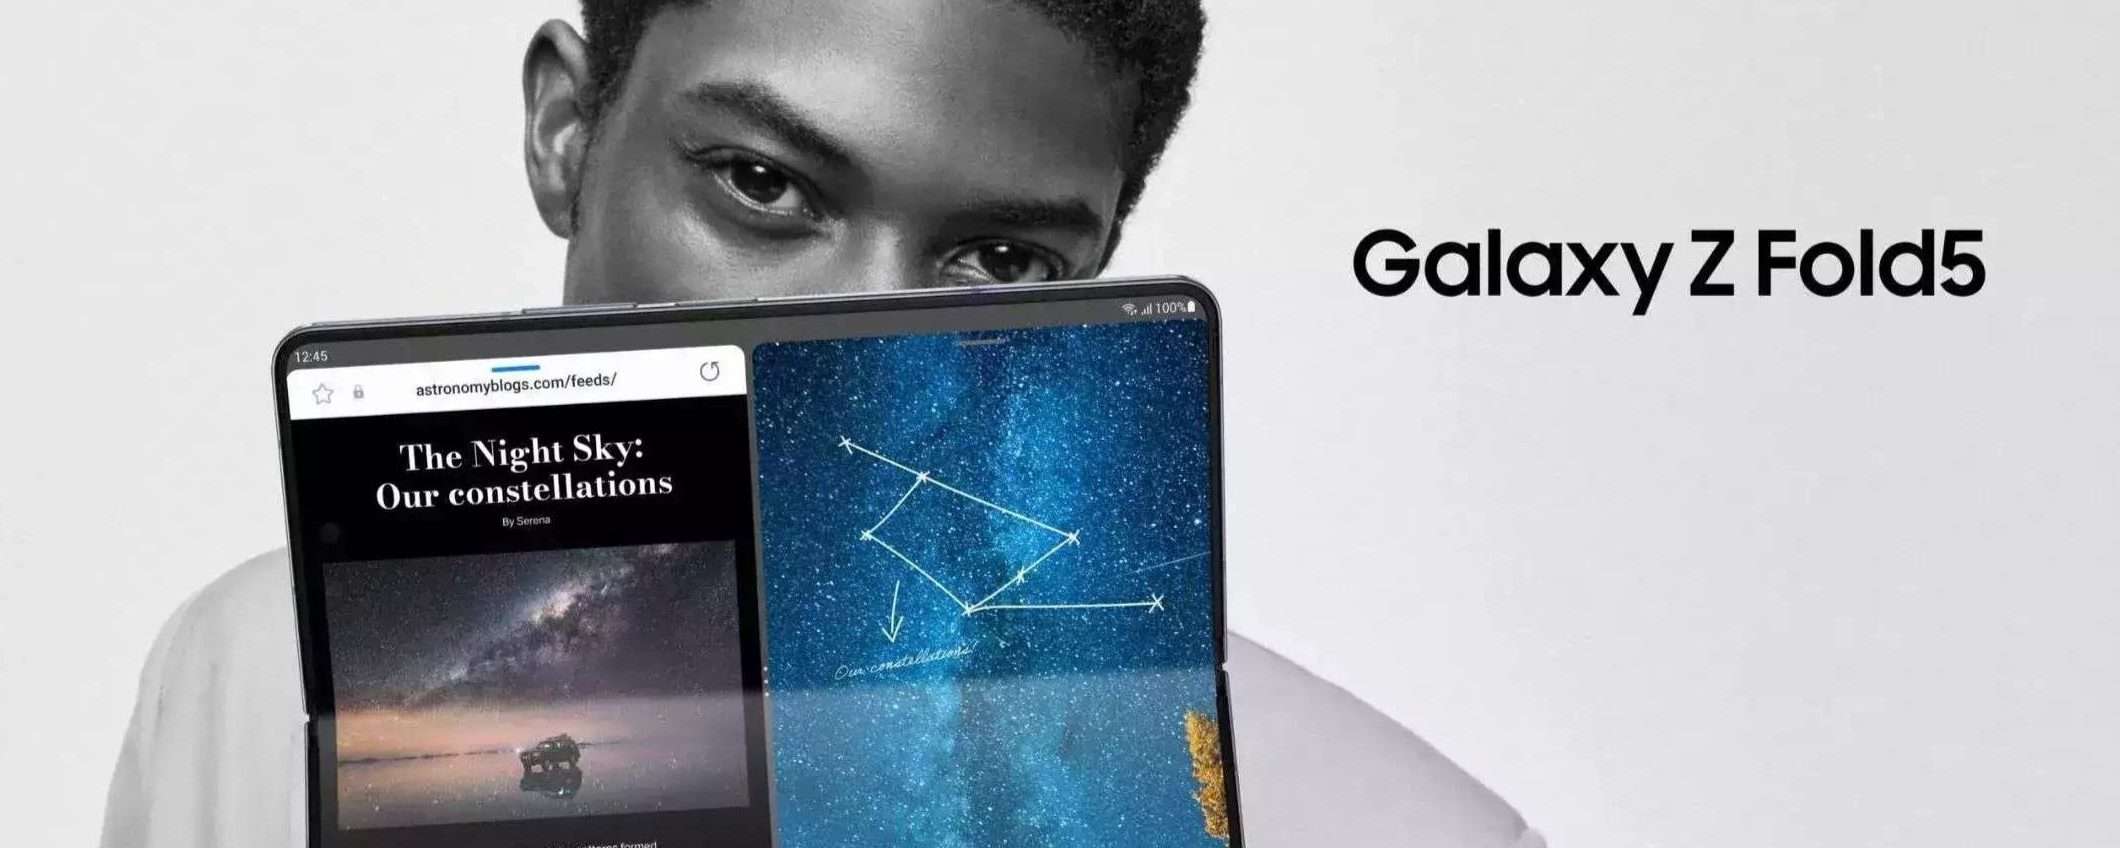 Samsung Galaxy Z Fold5 5G a soli 1599€: sconto FOLLE, è il più completo